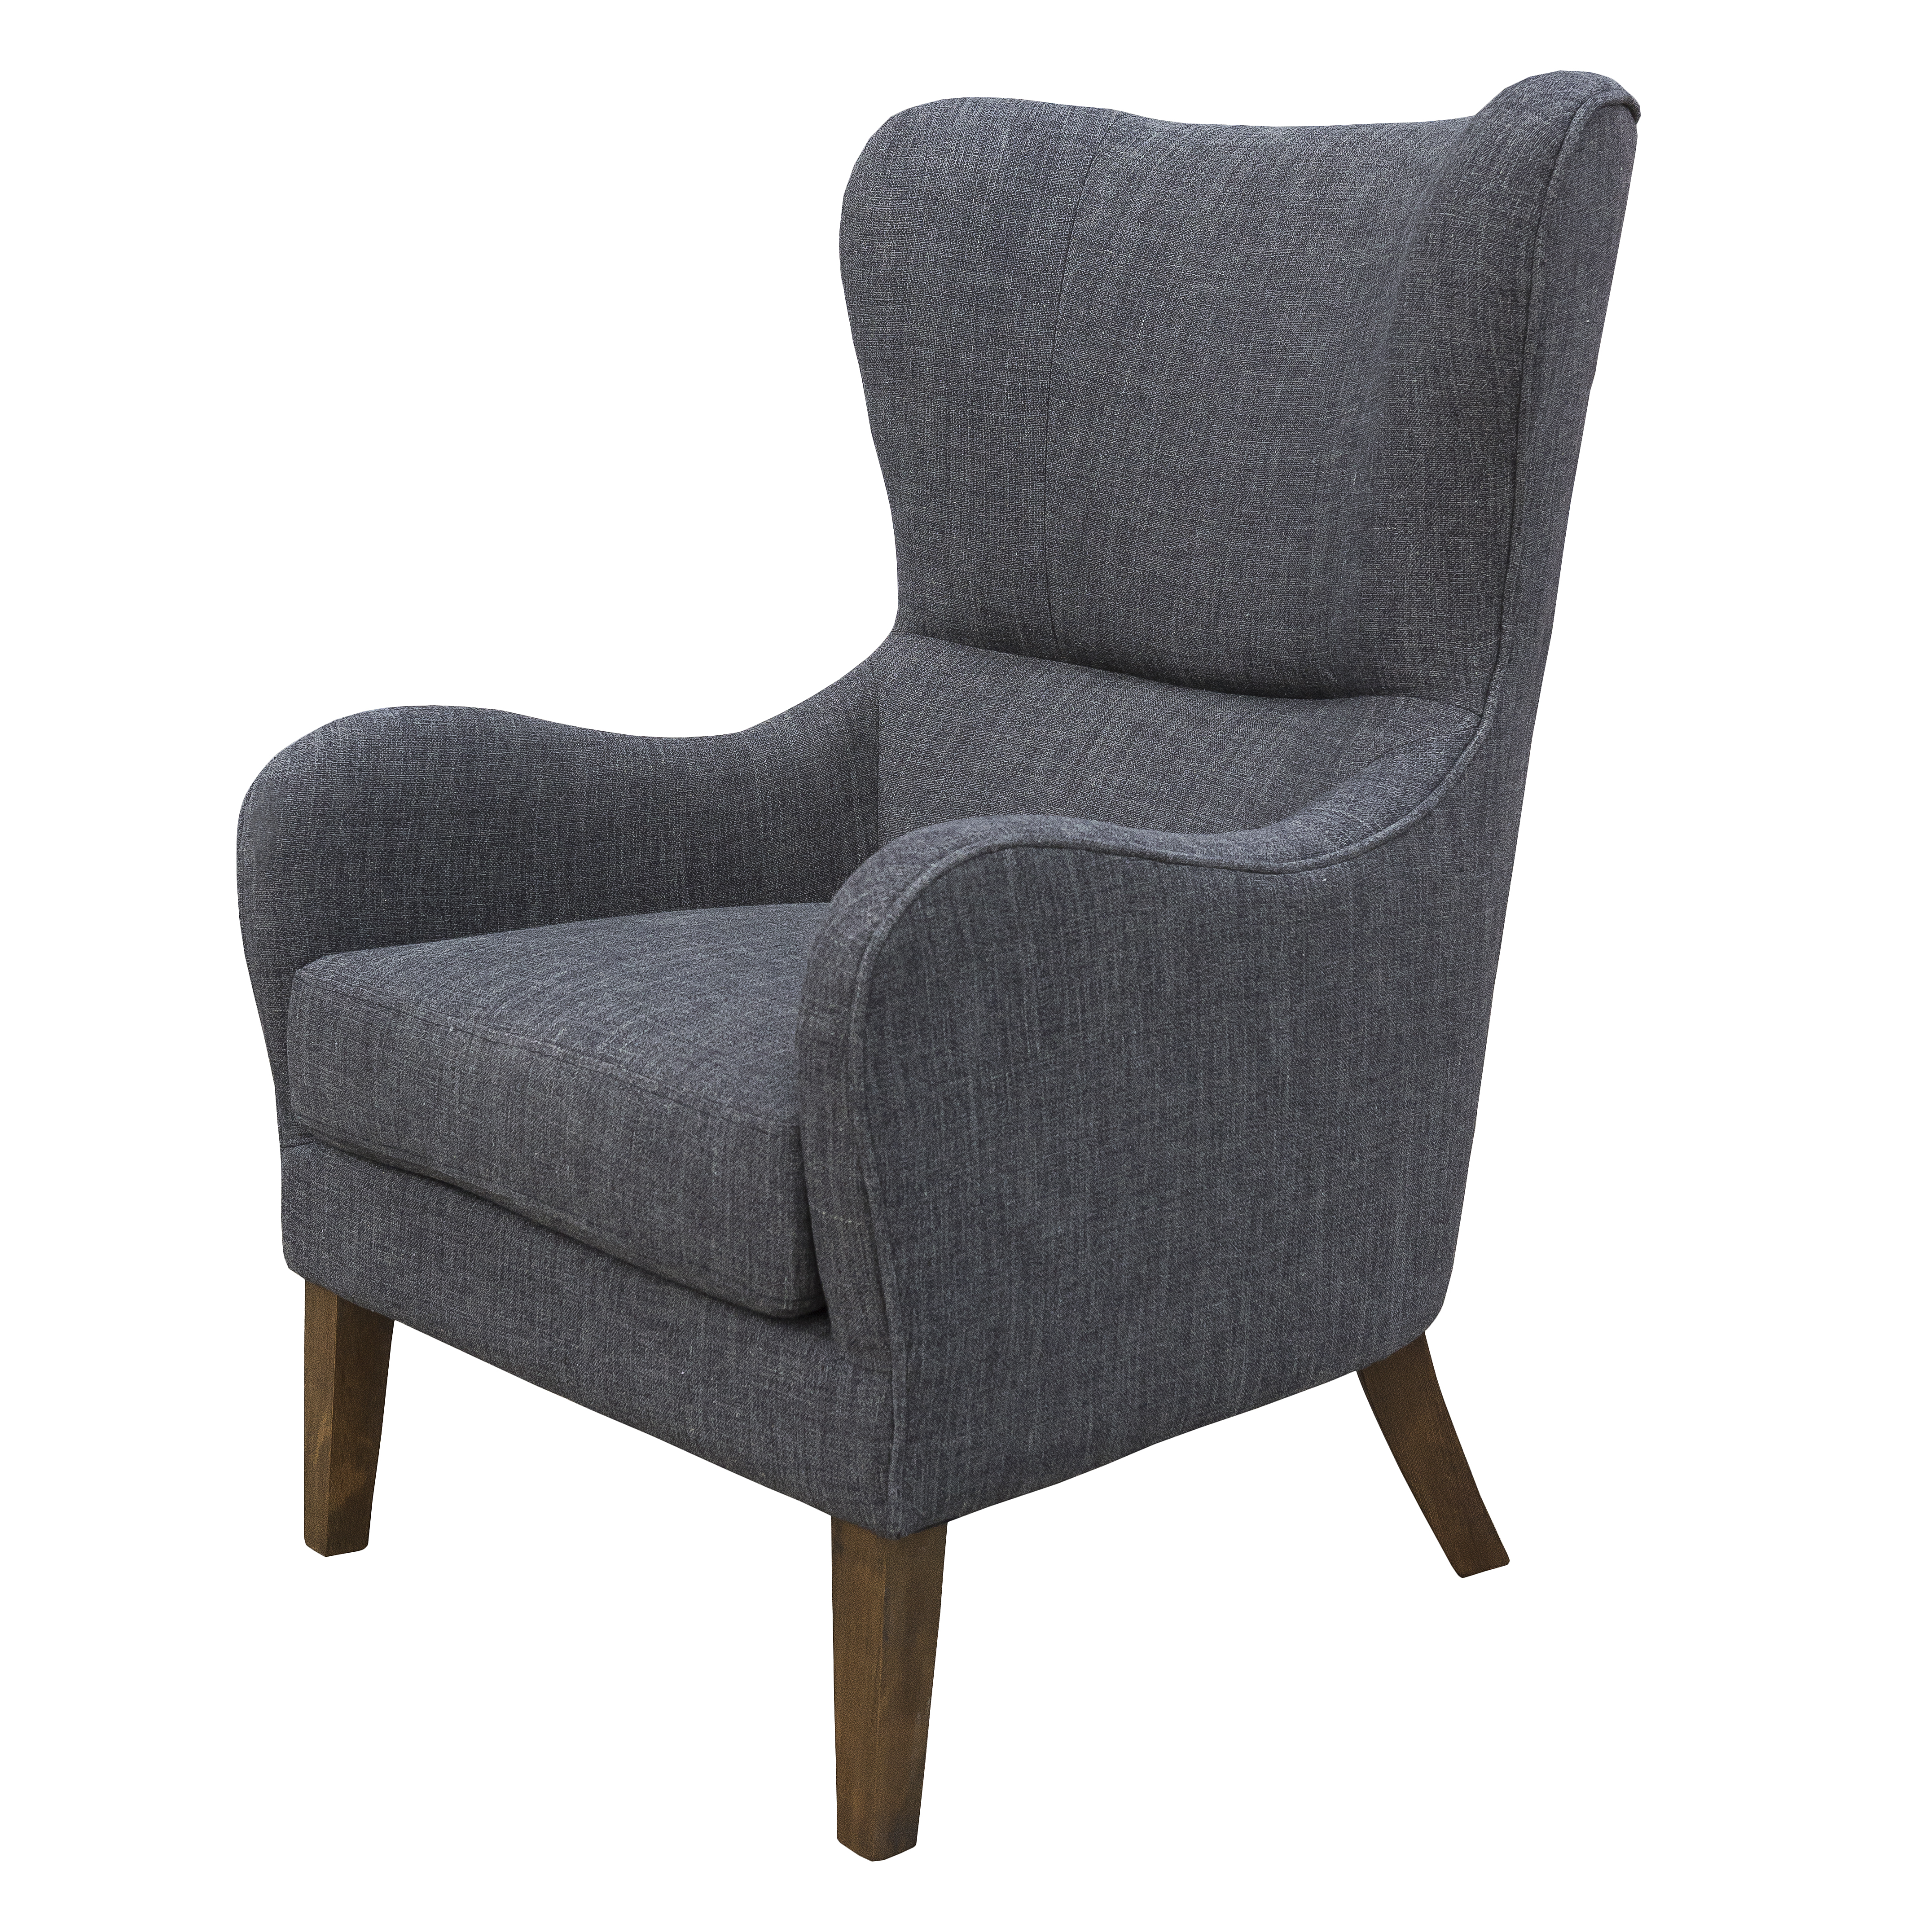 Accent chair “Victoria” in Dark Grey Linen-Blend Fabric